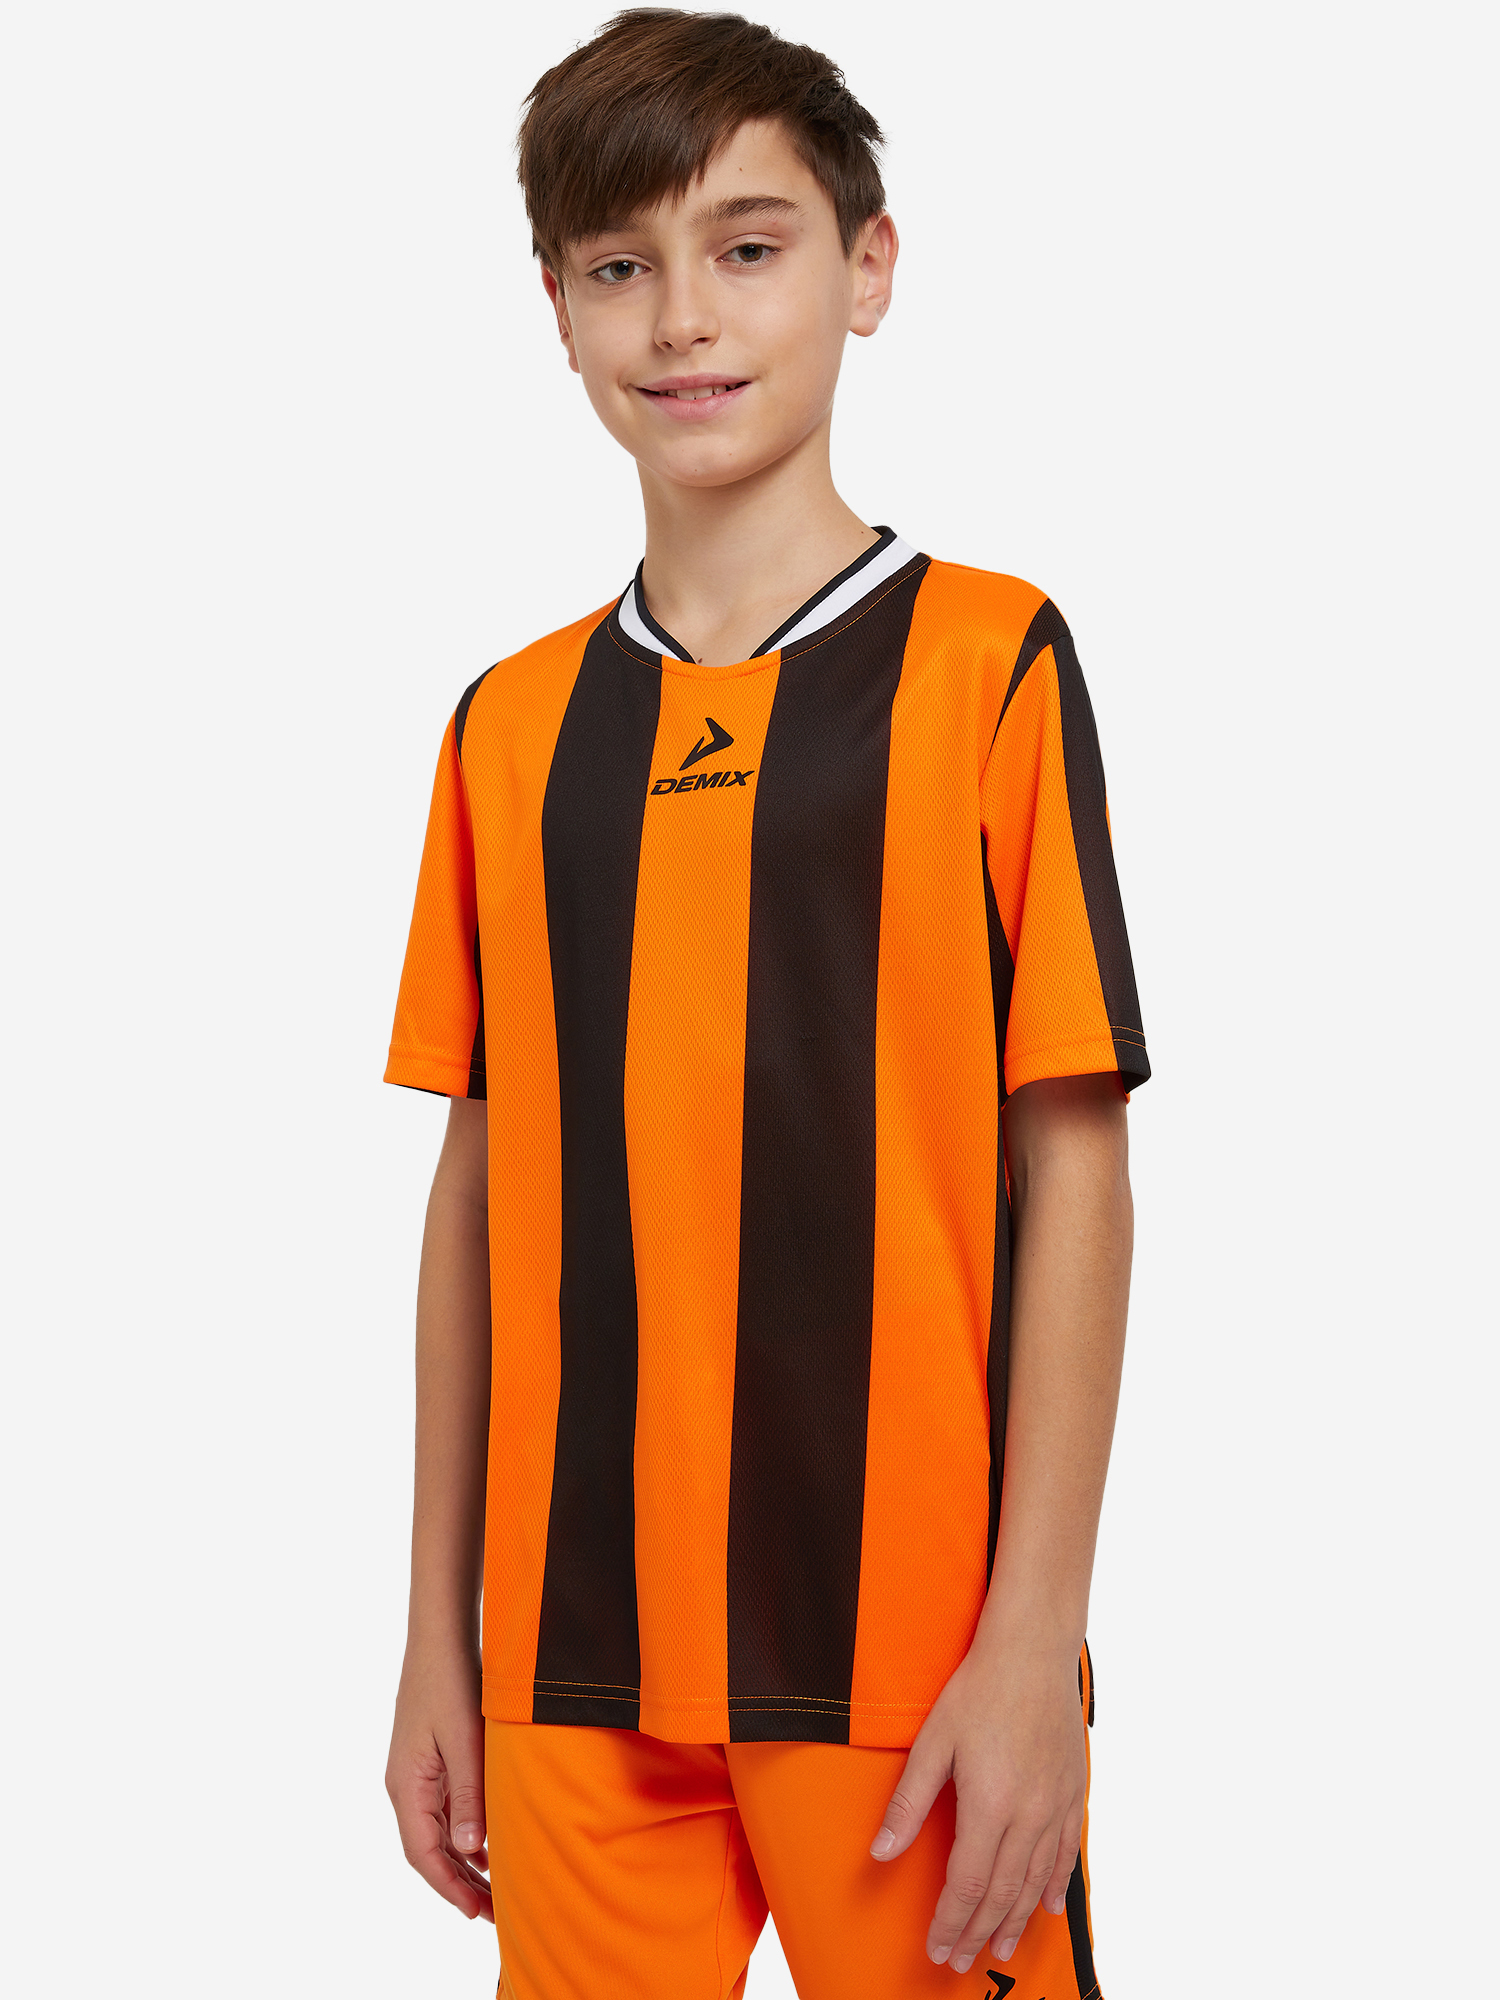 Футболка для мальчиков Demix Legacy, Оранжевый футболка для мальчиков demix оранжевый